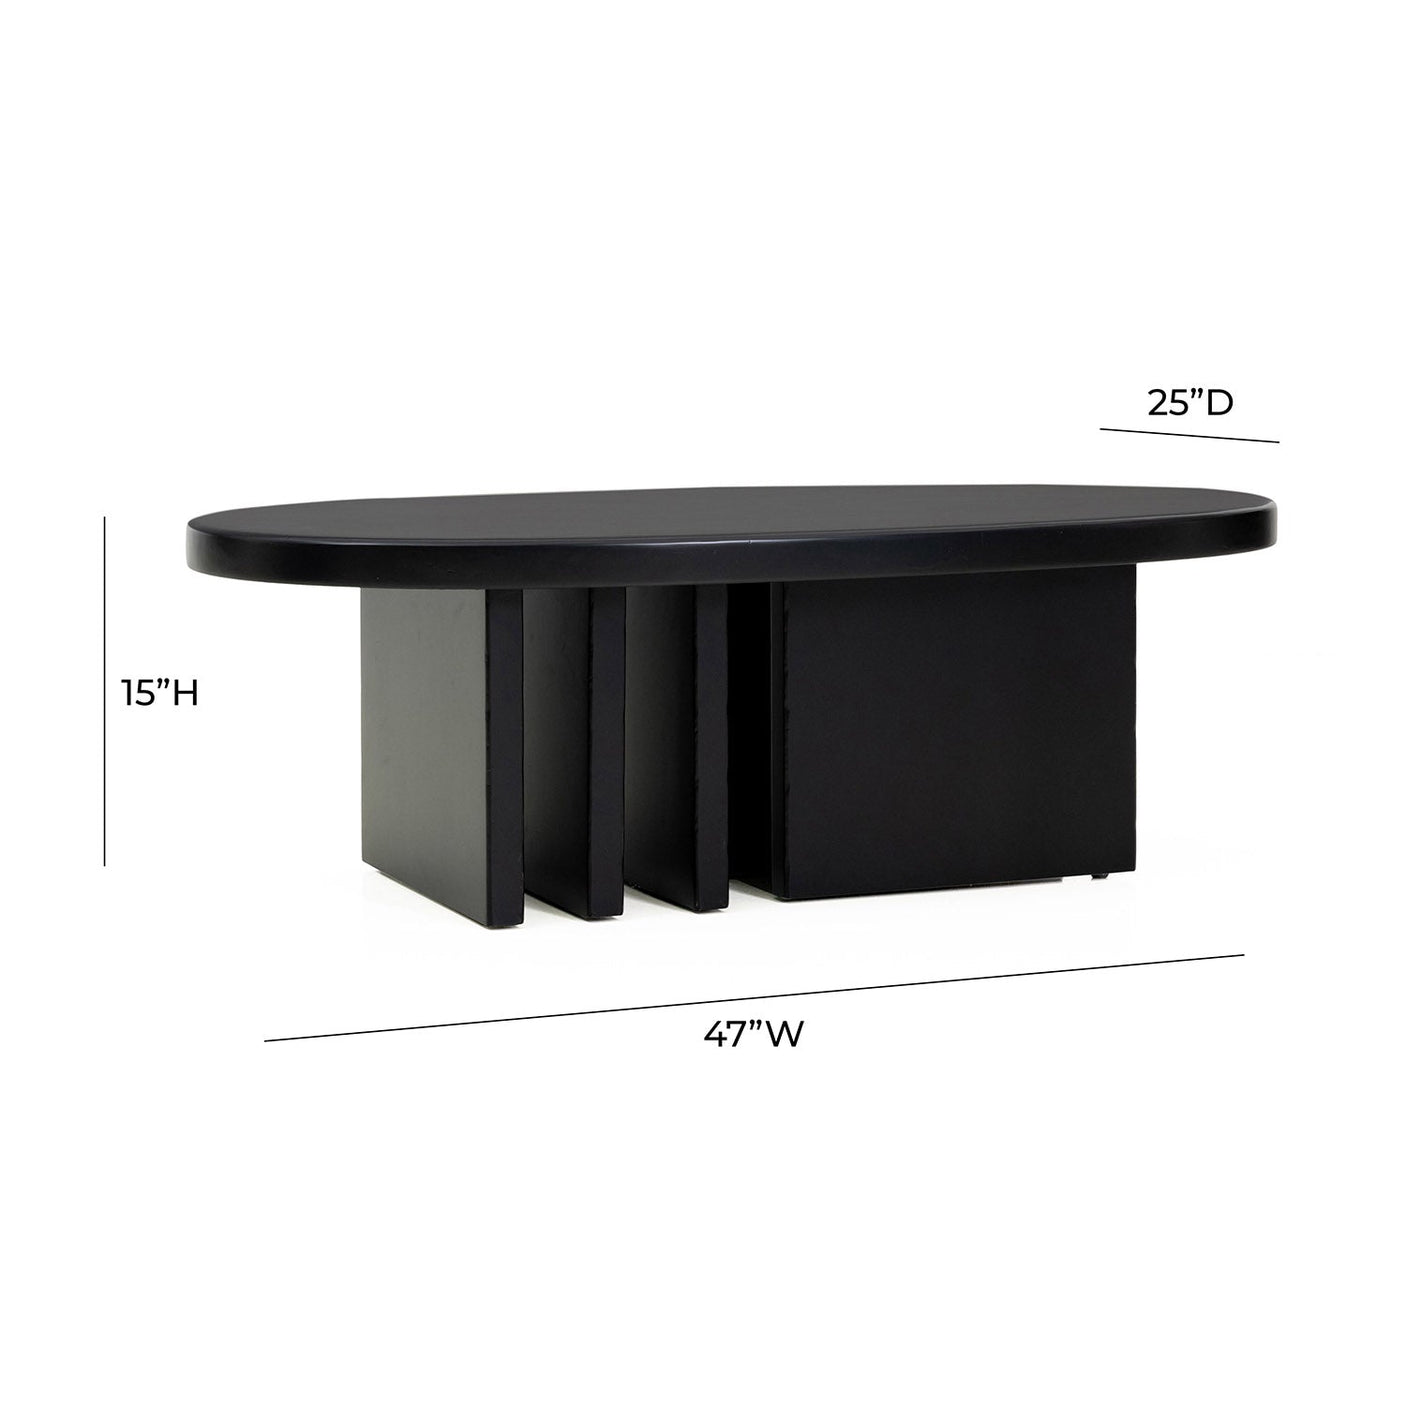 Tov Furniture Etta Black Coffee Table